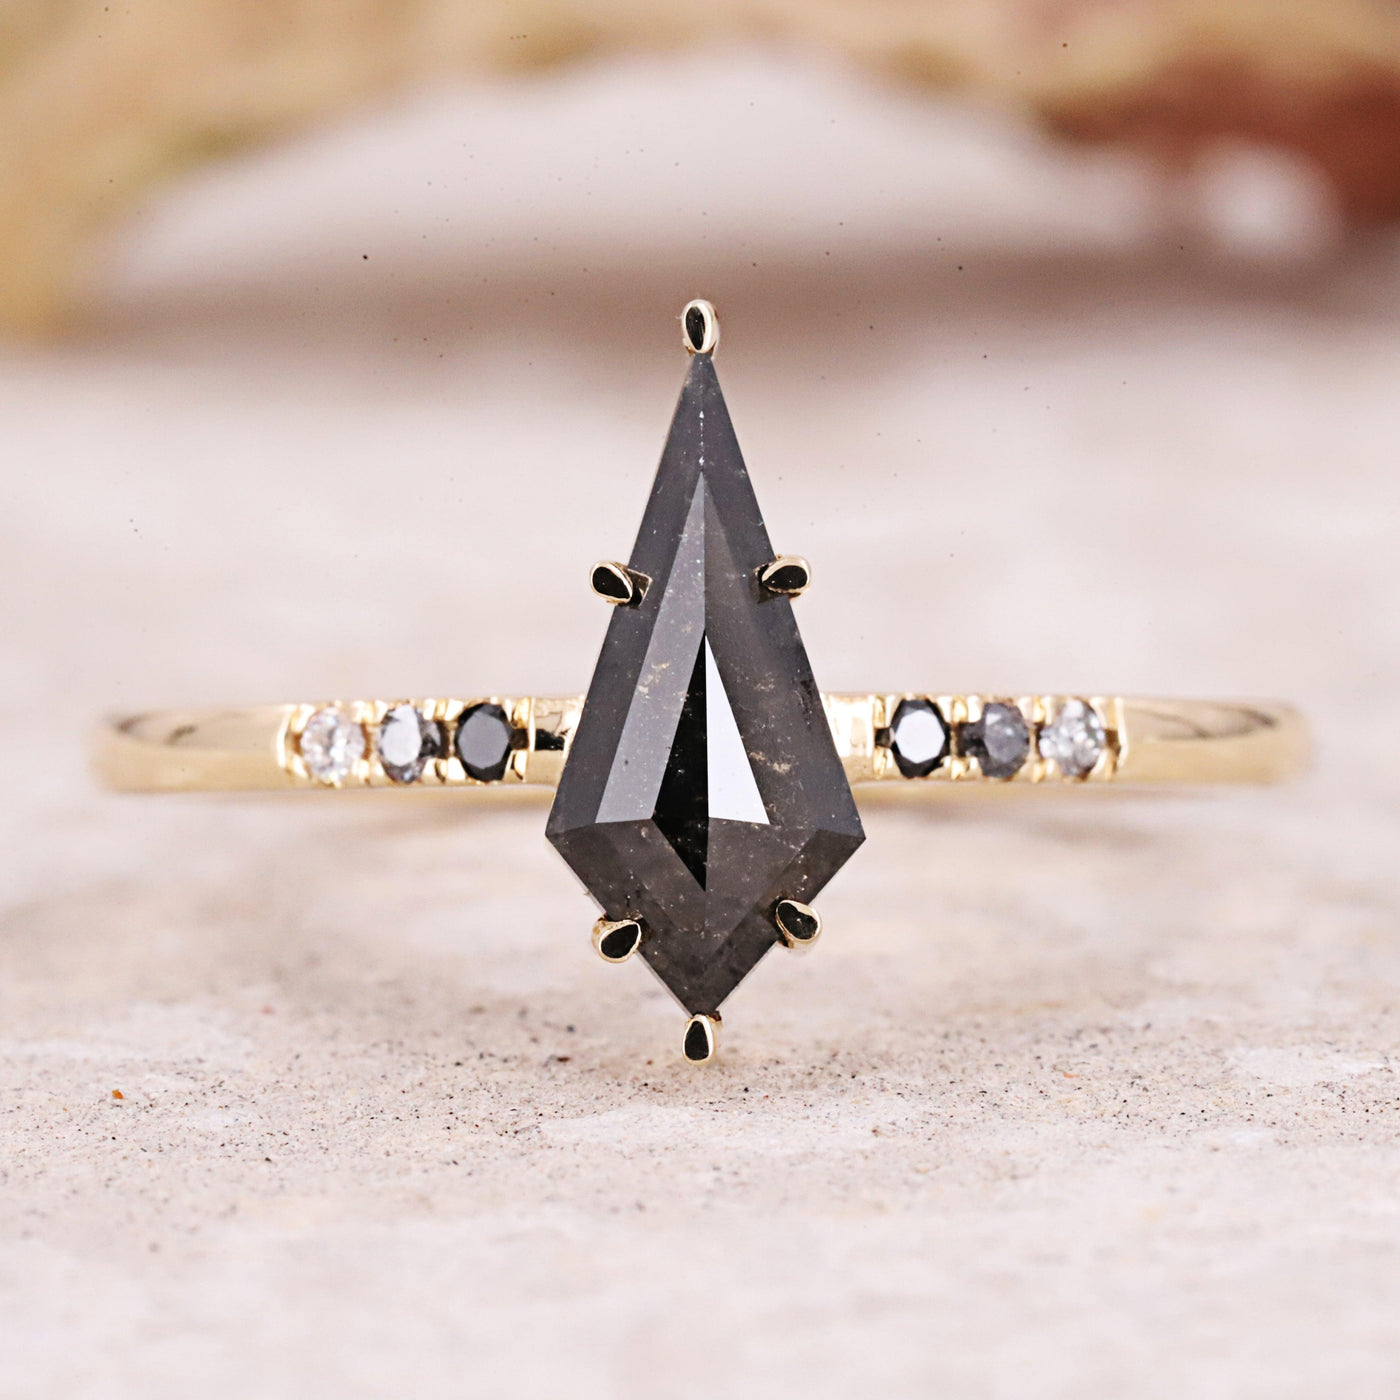 Salt and Pepper diamond Ring | kite Engagement Ring | kite diamond ring - Rubysta